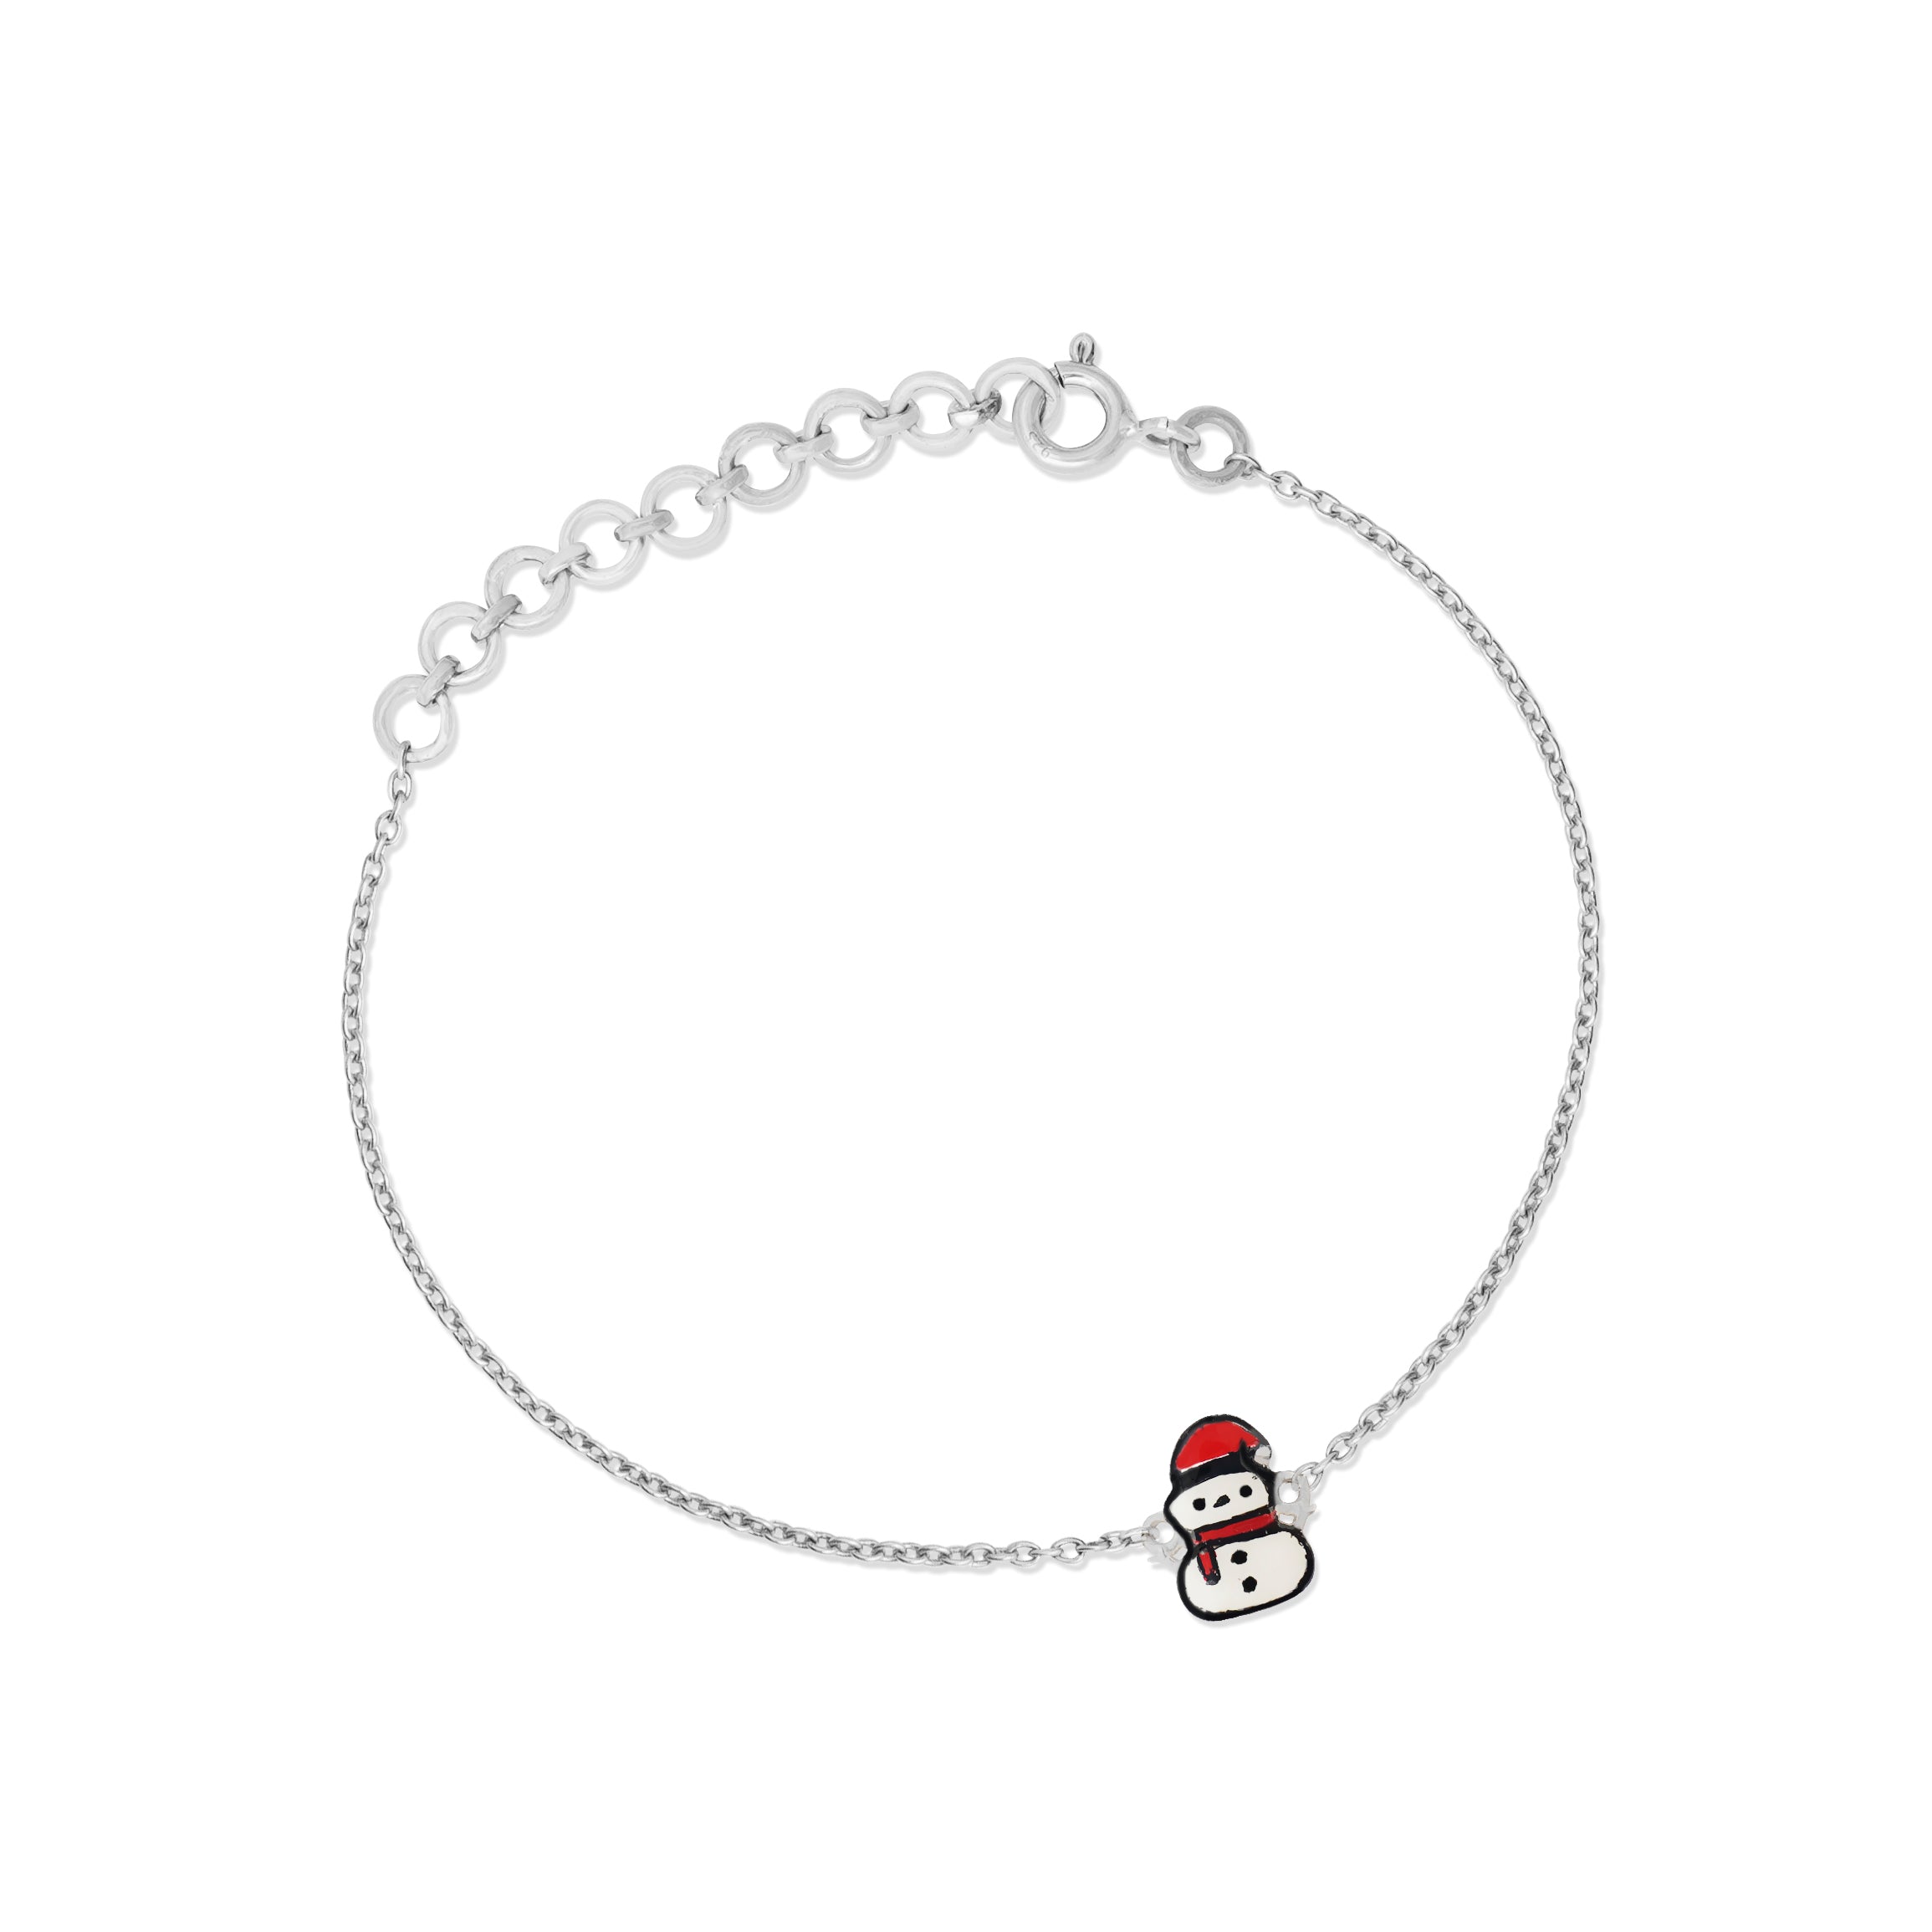 Whimsical Snowman bracelet